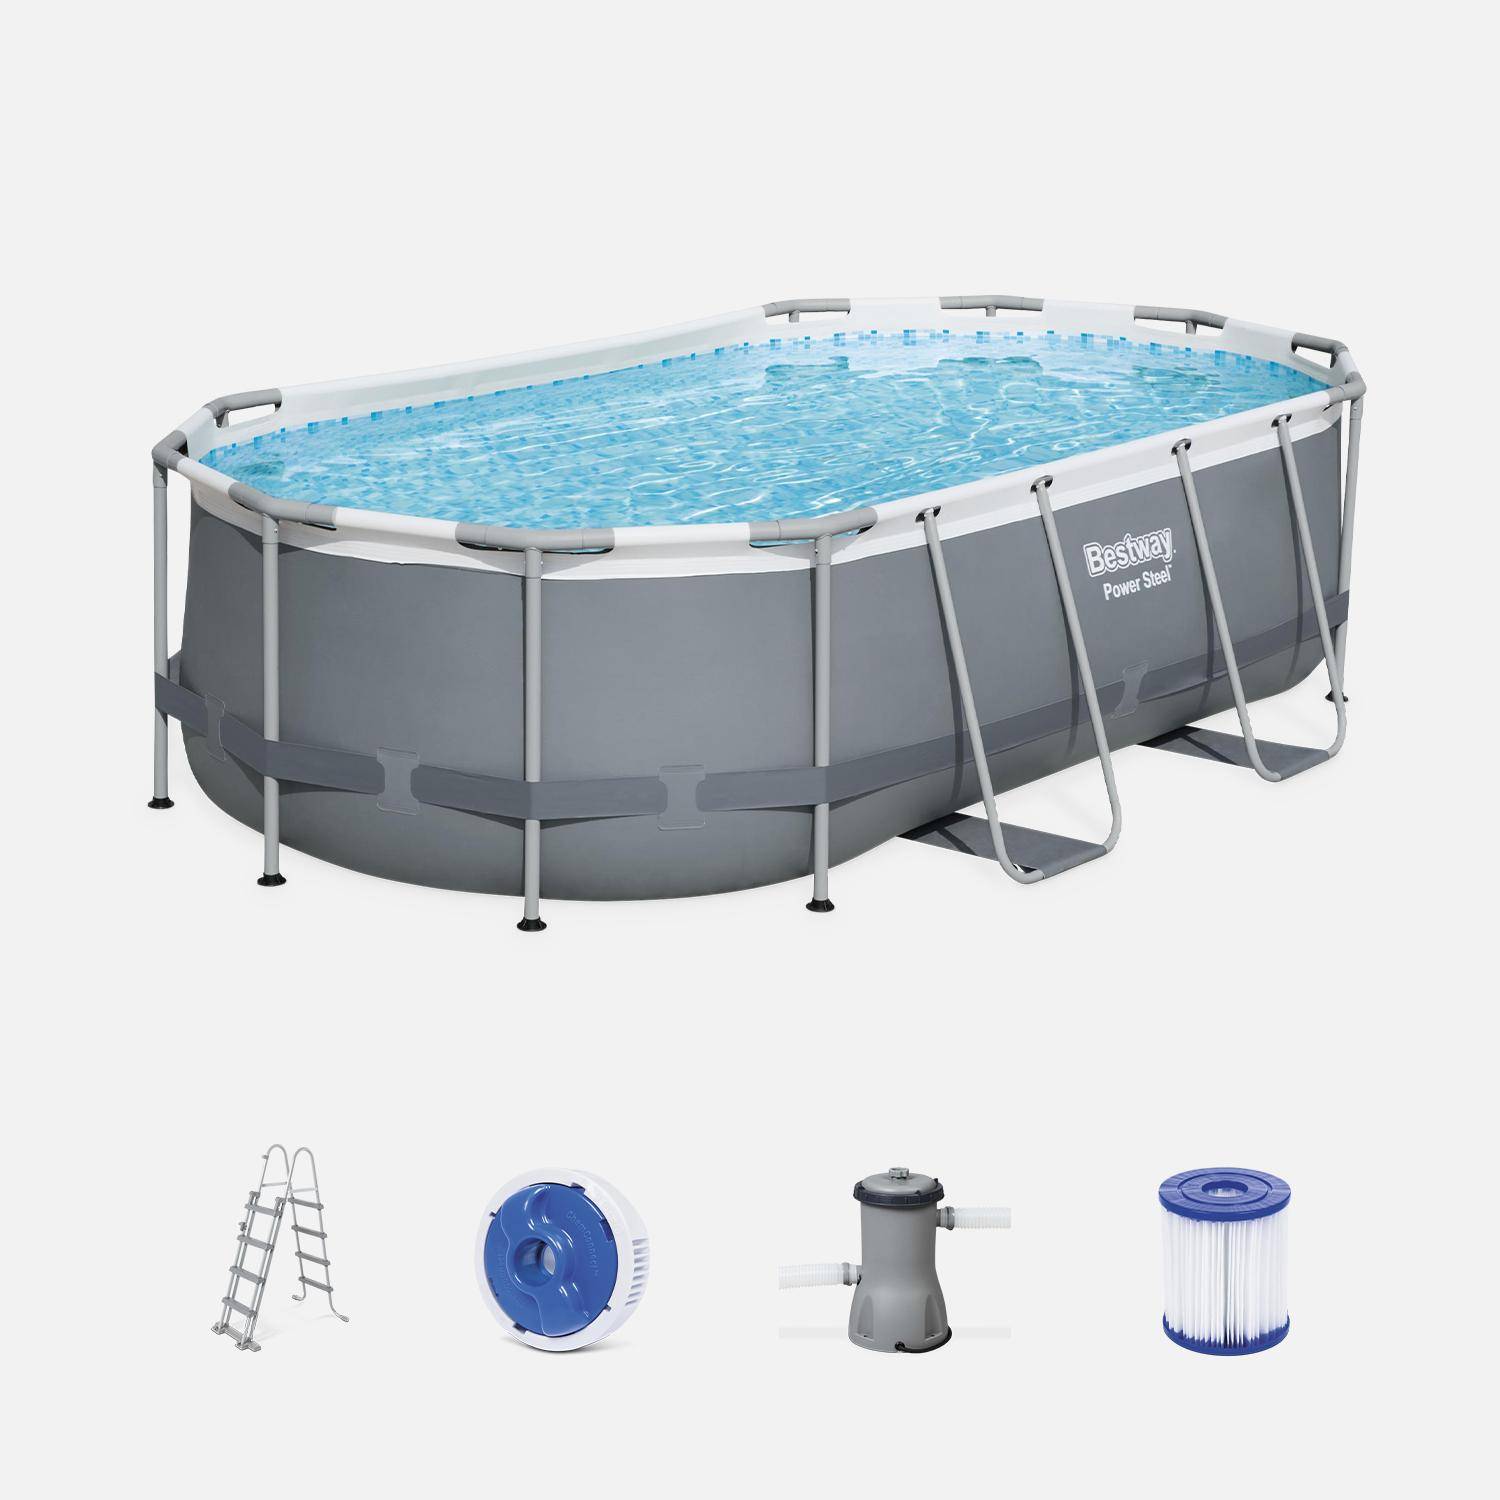 BESTWAY Kit completo per piscina - Grigio Spinelle - piscina tubolare ovale 4x2 m, pompa filtro, scaletta e kit di riparazione inclusi,sweeek,Photo1